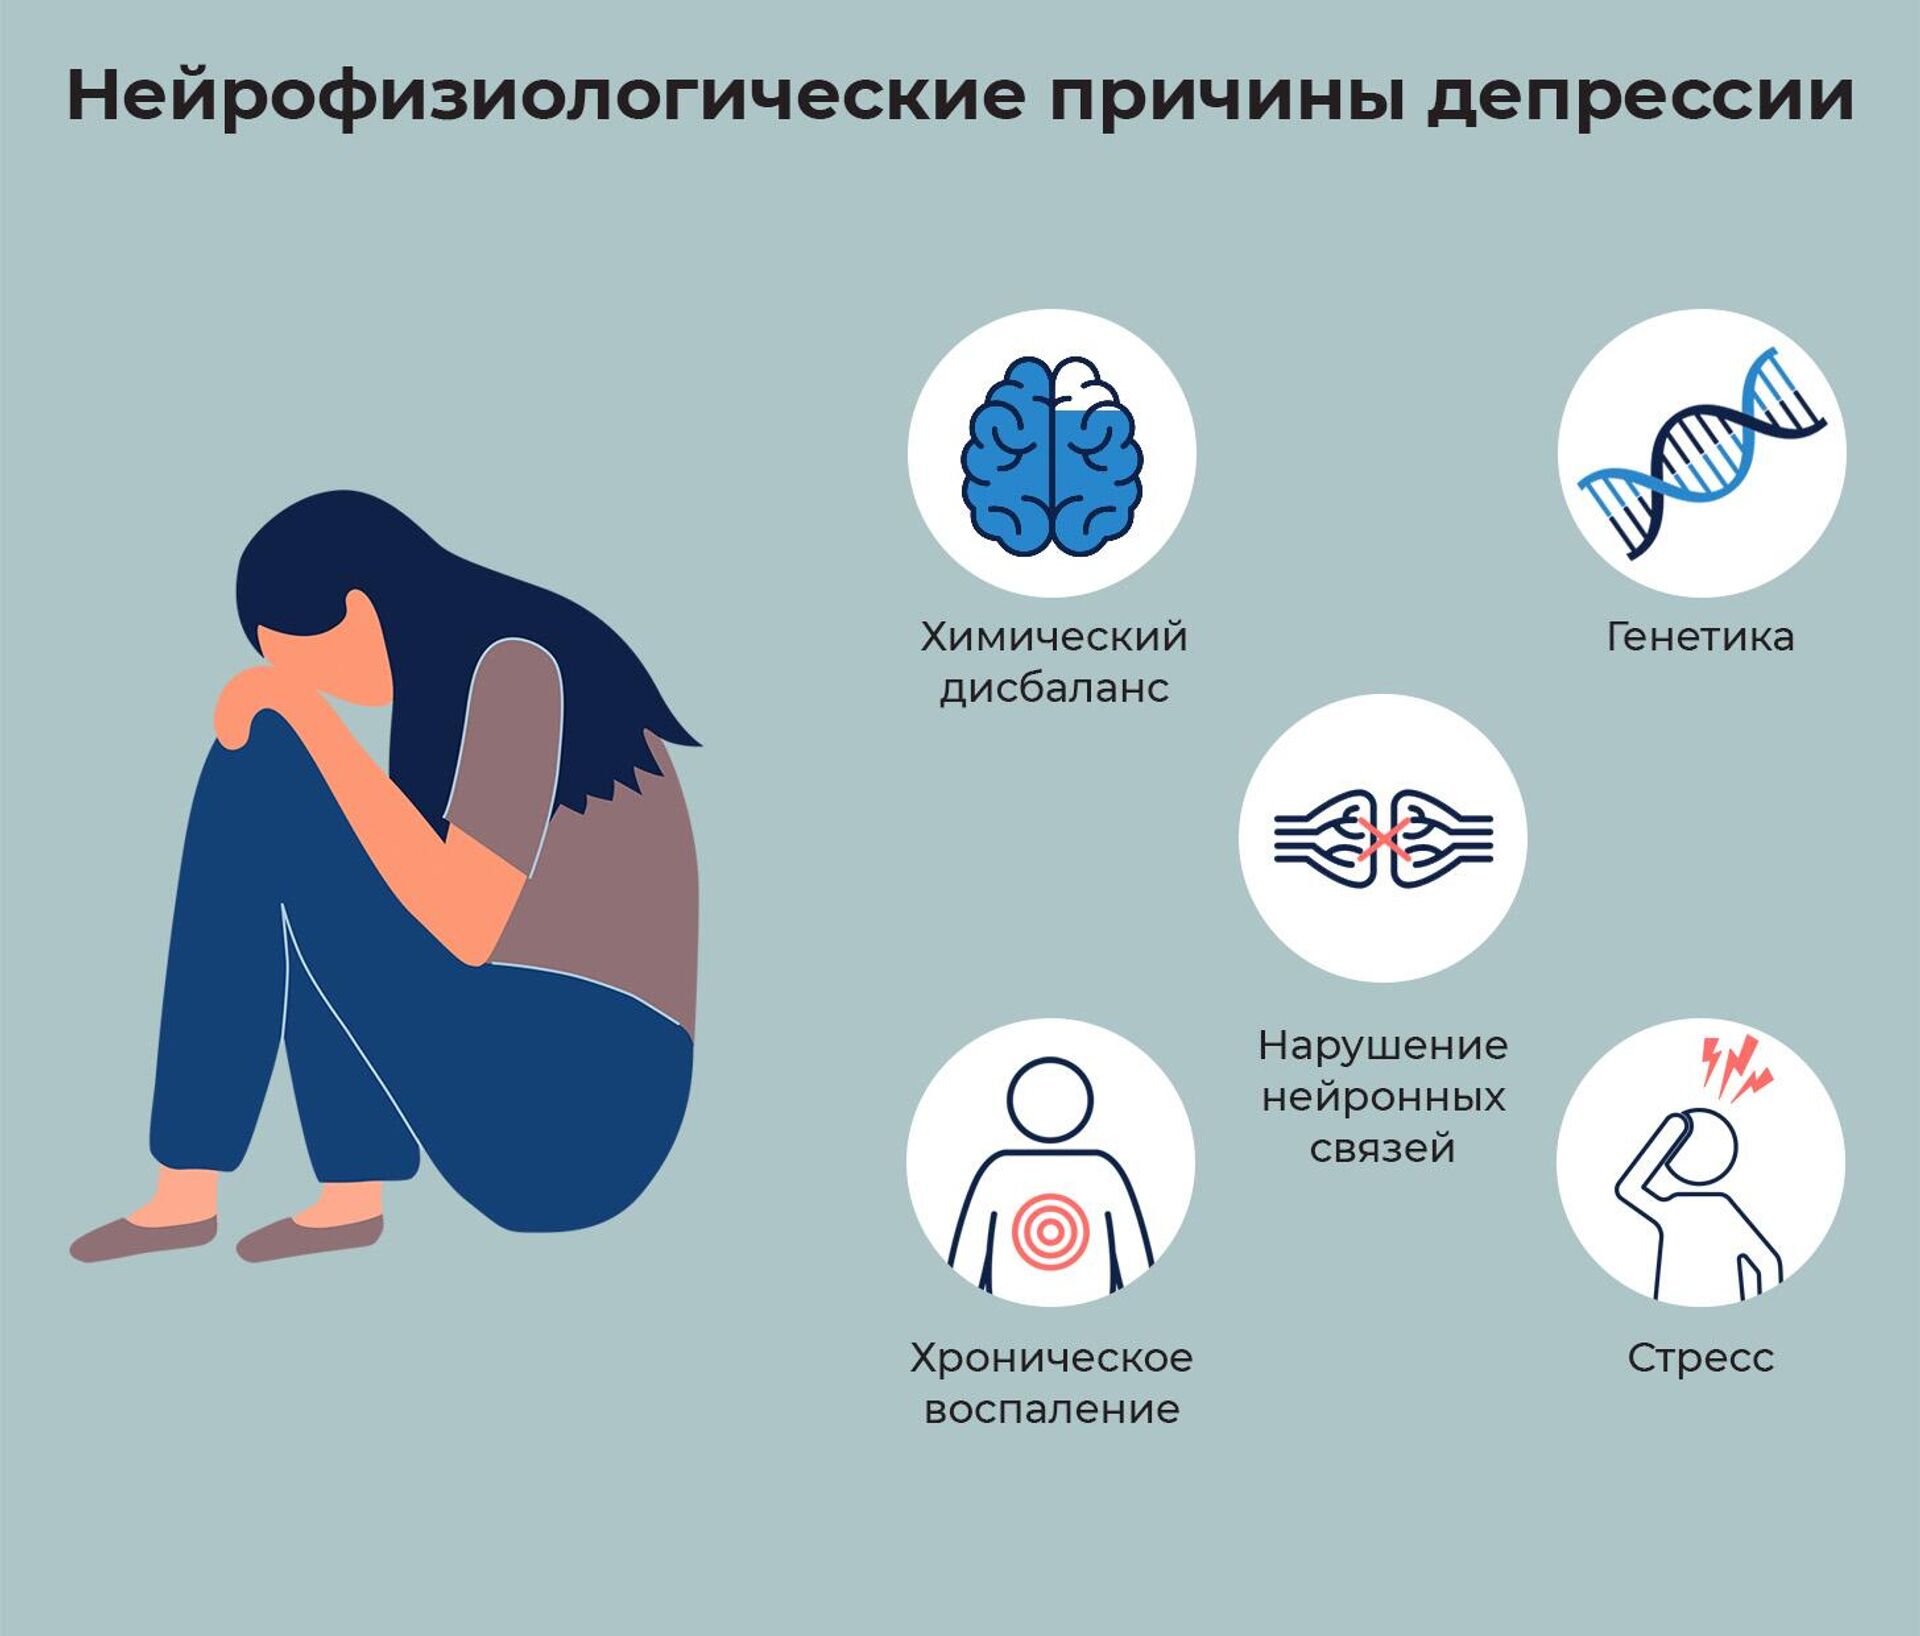 Депрессии проходят сами. Причины депрессии. Компоненты депрессии. Снижение серотонина. Может ли хроническая усталость вызвать депрессию.